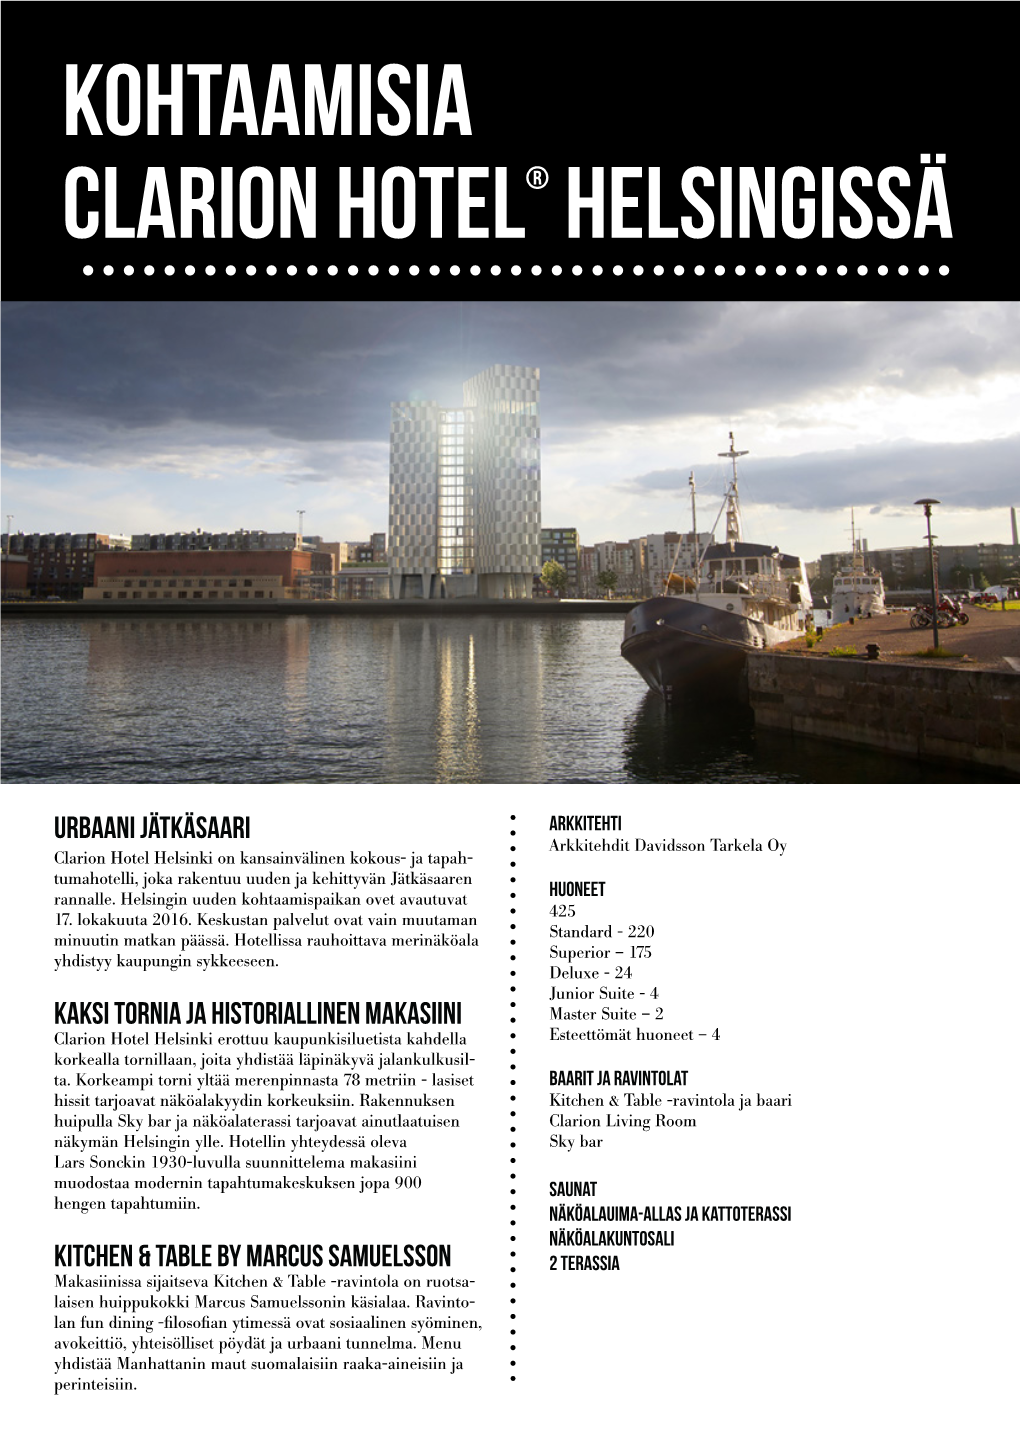 Kohtaamisia Clarion Hotel® Helsingissä